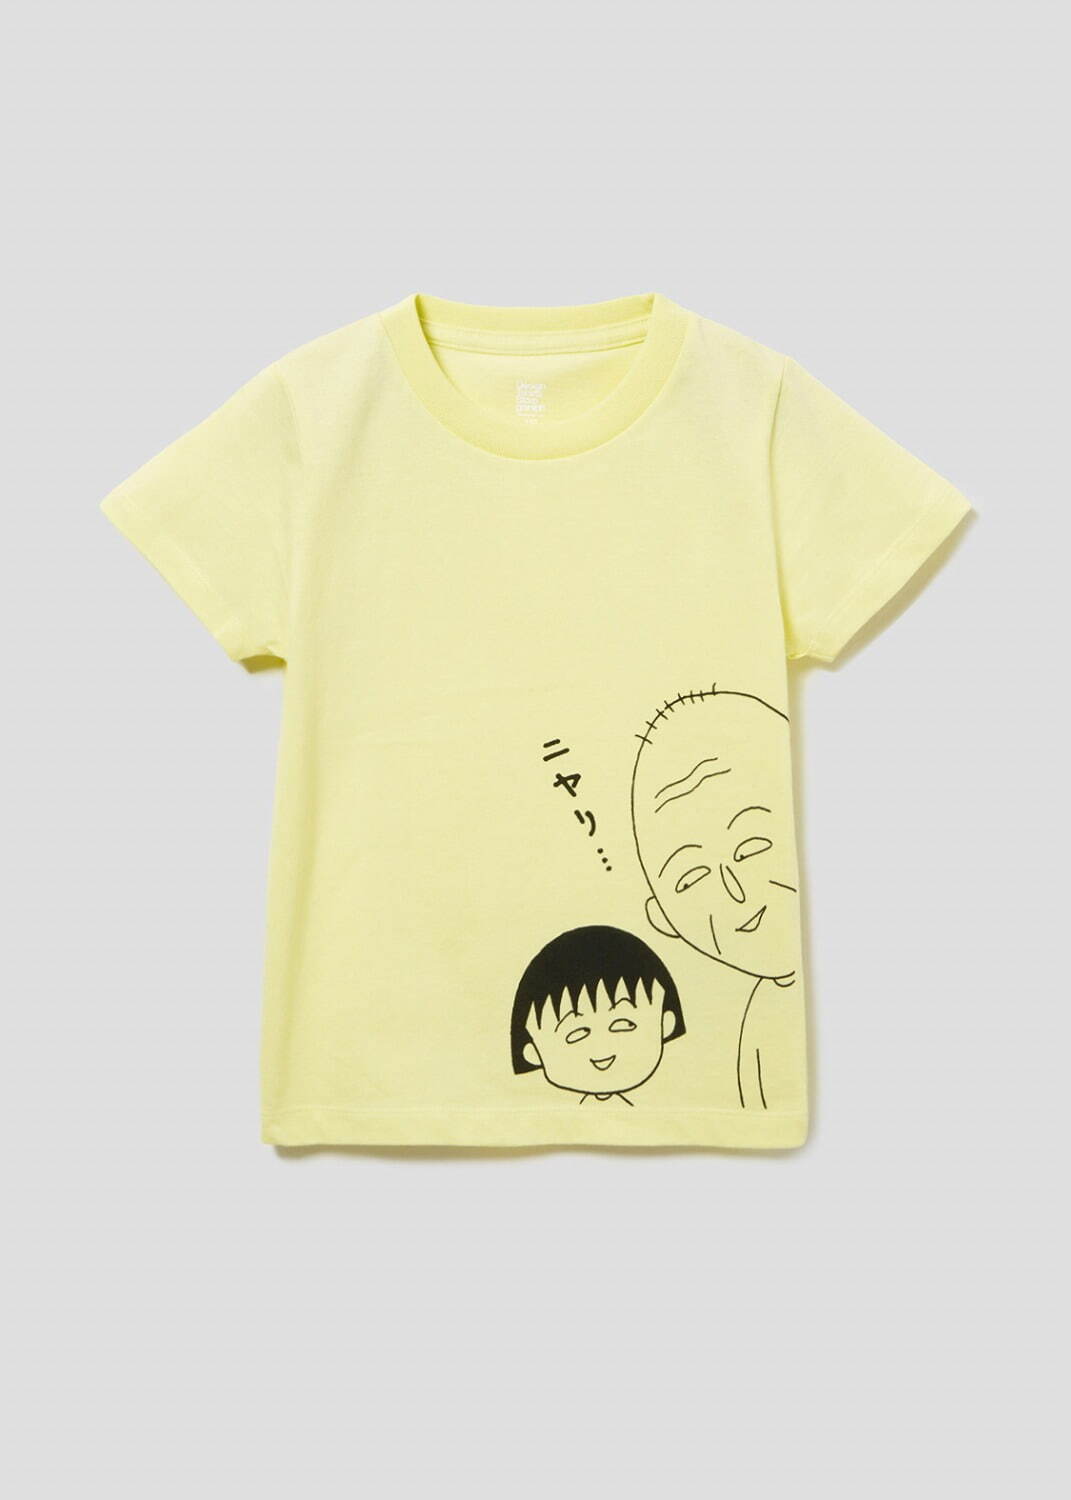 Tシャツ(ニヤリ) 3,500円